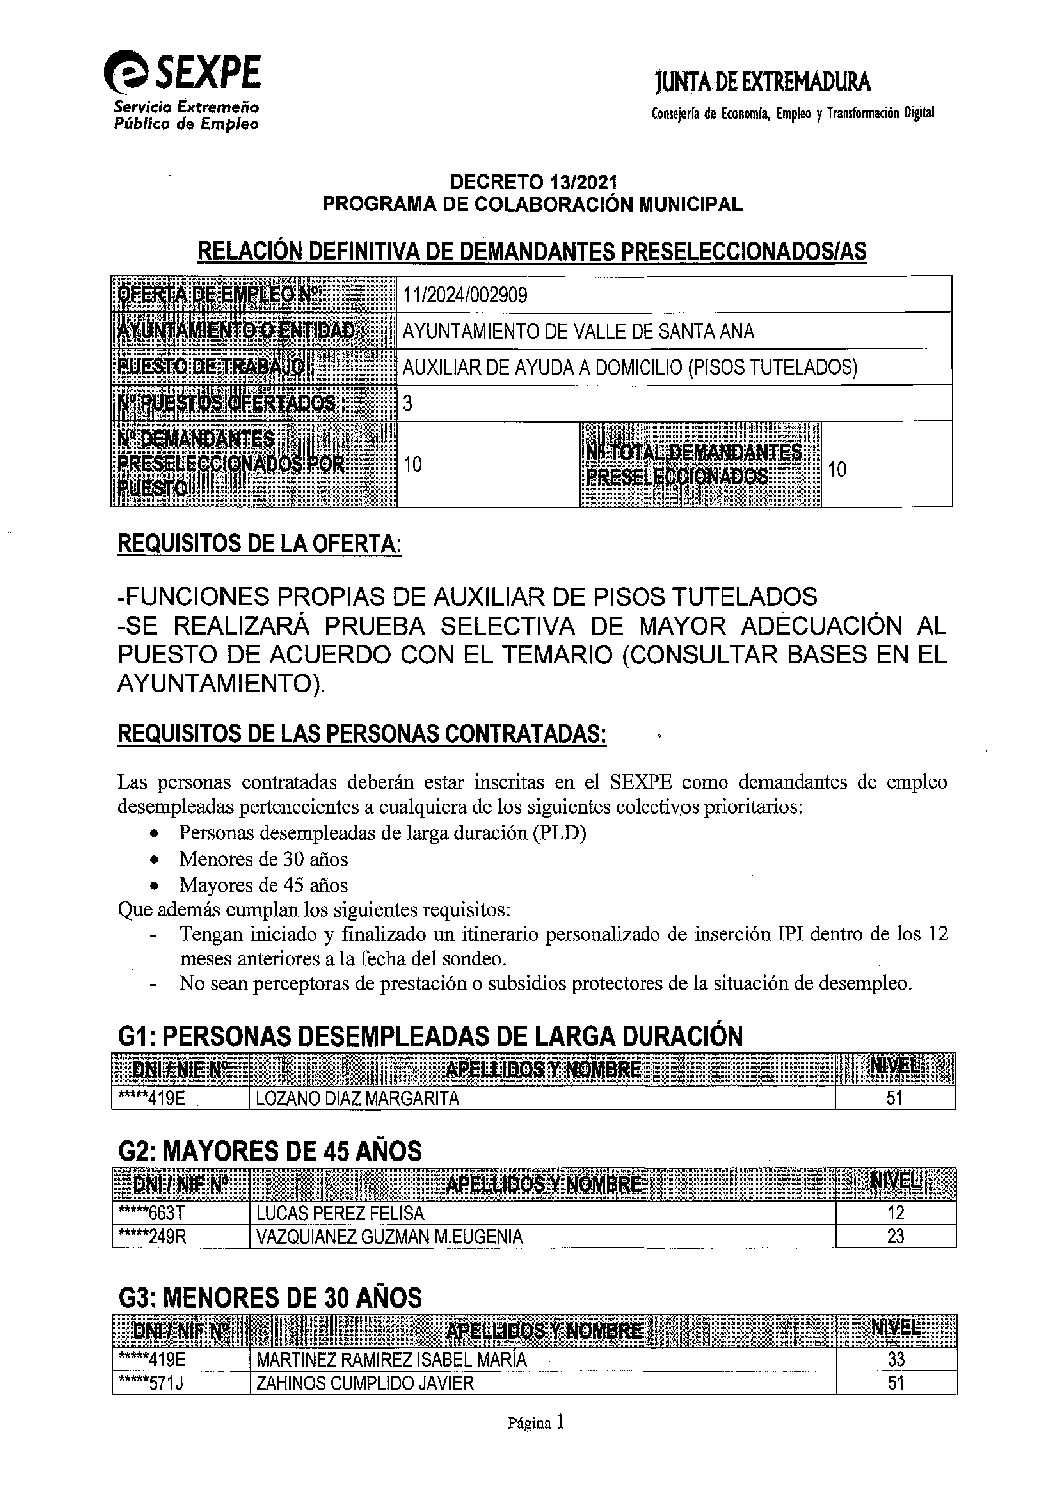 RELACIÓN DEFINITIVA DE DEMANDANTES PRESELECCIONADOS/AS PARA AUXILIAR DE AYUDA A DOMILIO (PISOS TUTELADOS).